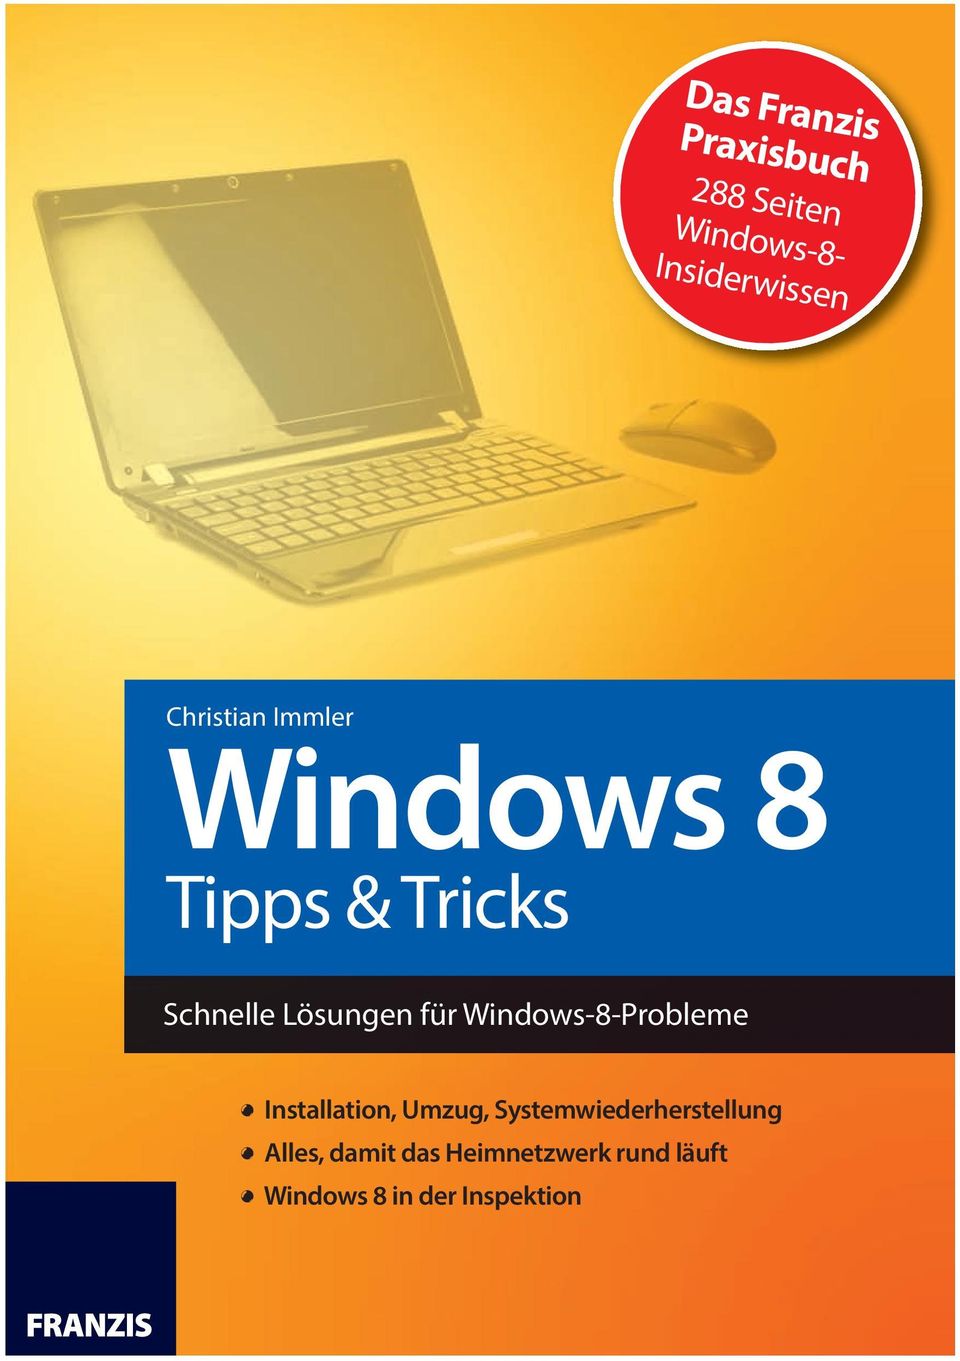 Windows-8-Probleme! Installation, Umzug, Systemwiederherstellung!